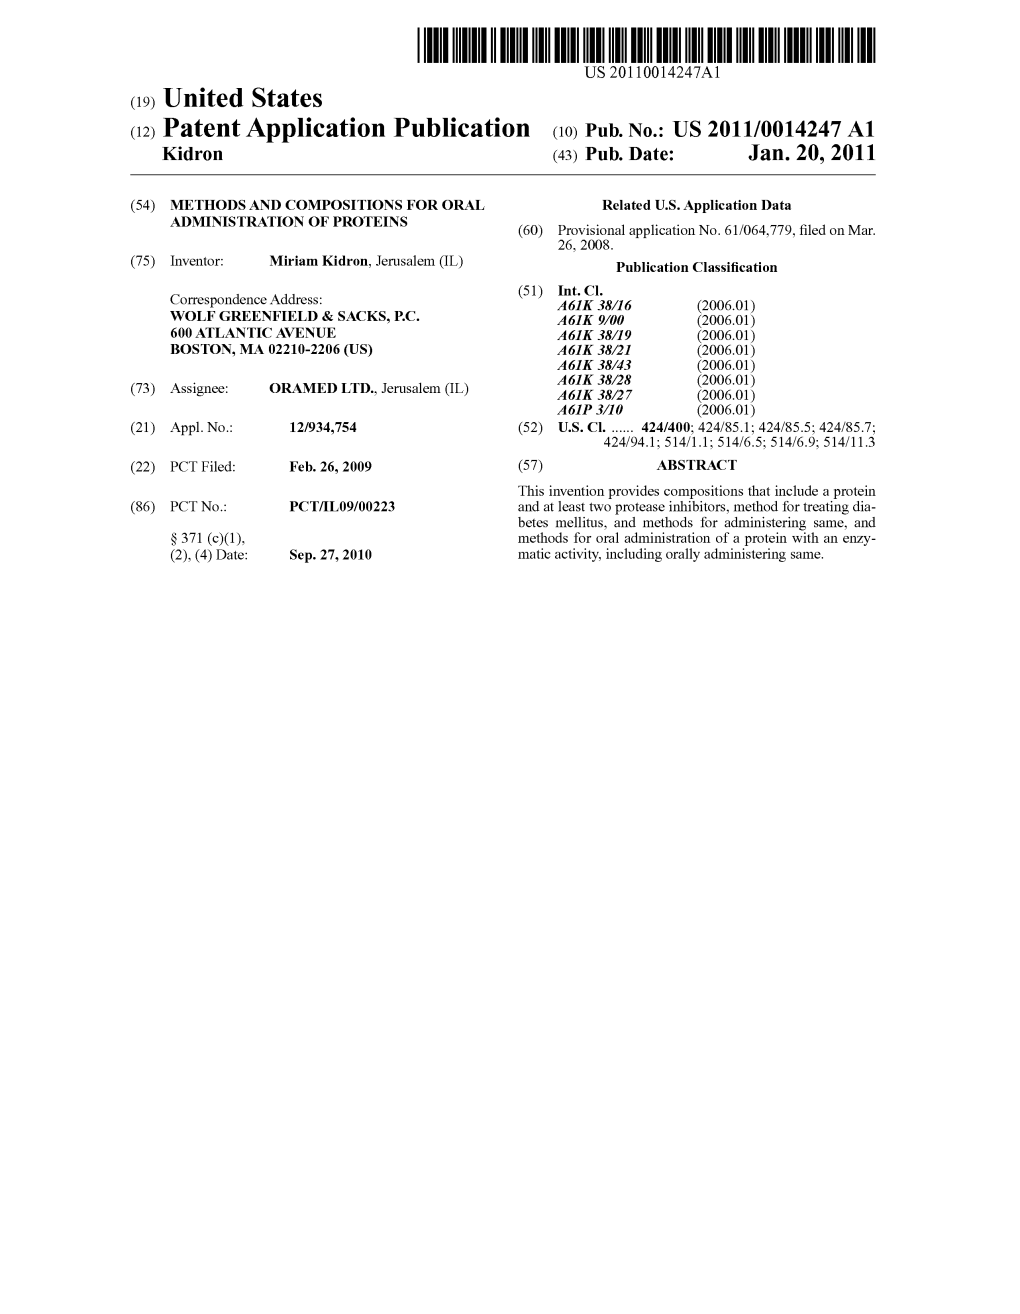 (12) Patent Application Publication (10) Pub. No.: US 2011/0014247 A1 Kidron (43) Pub